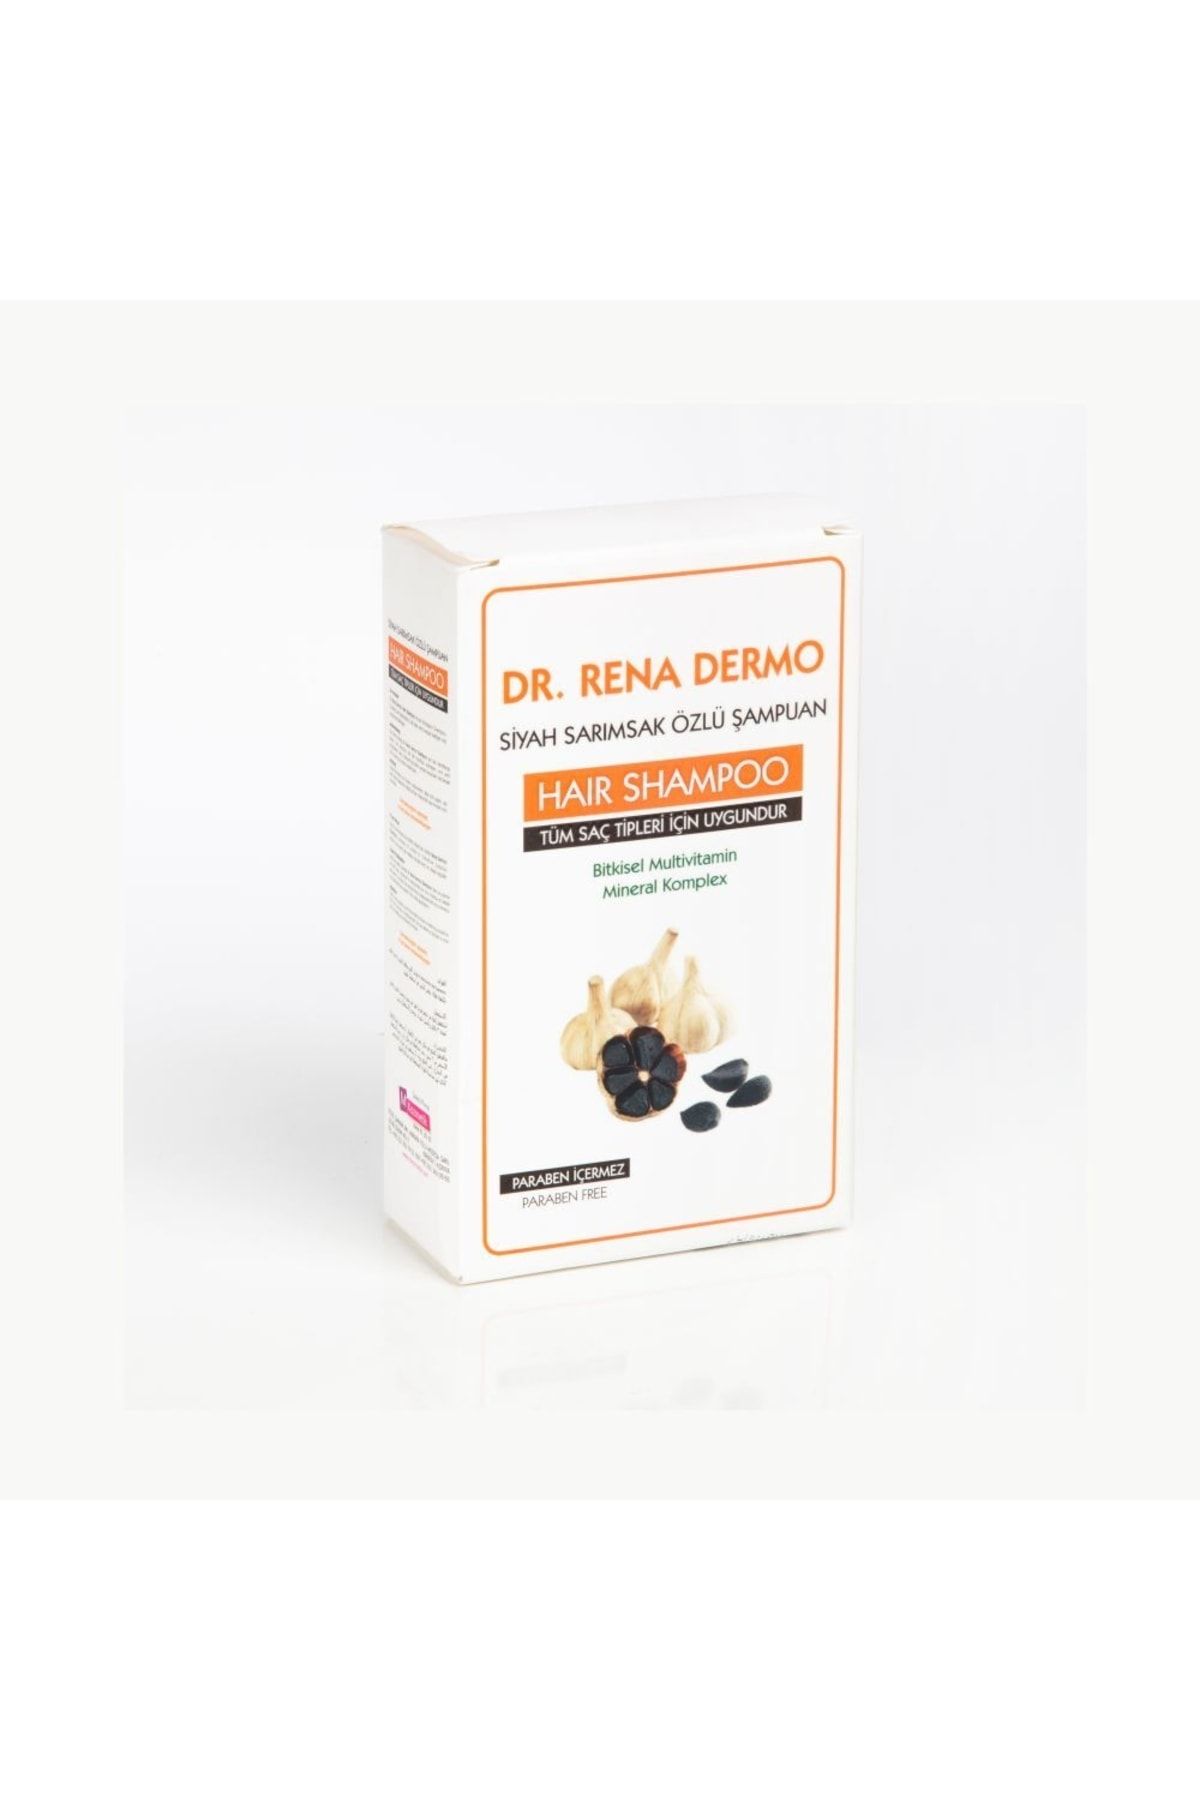 Dr. Rena Dermo Siyah Sarımsak Özlü Şampuan 300 ml